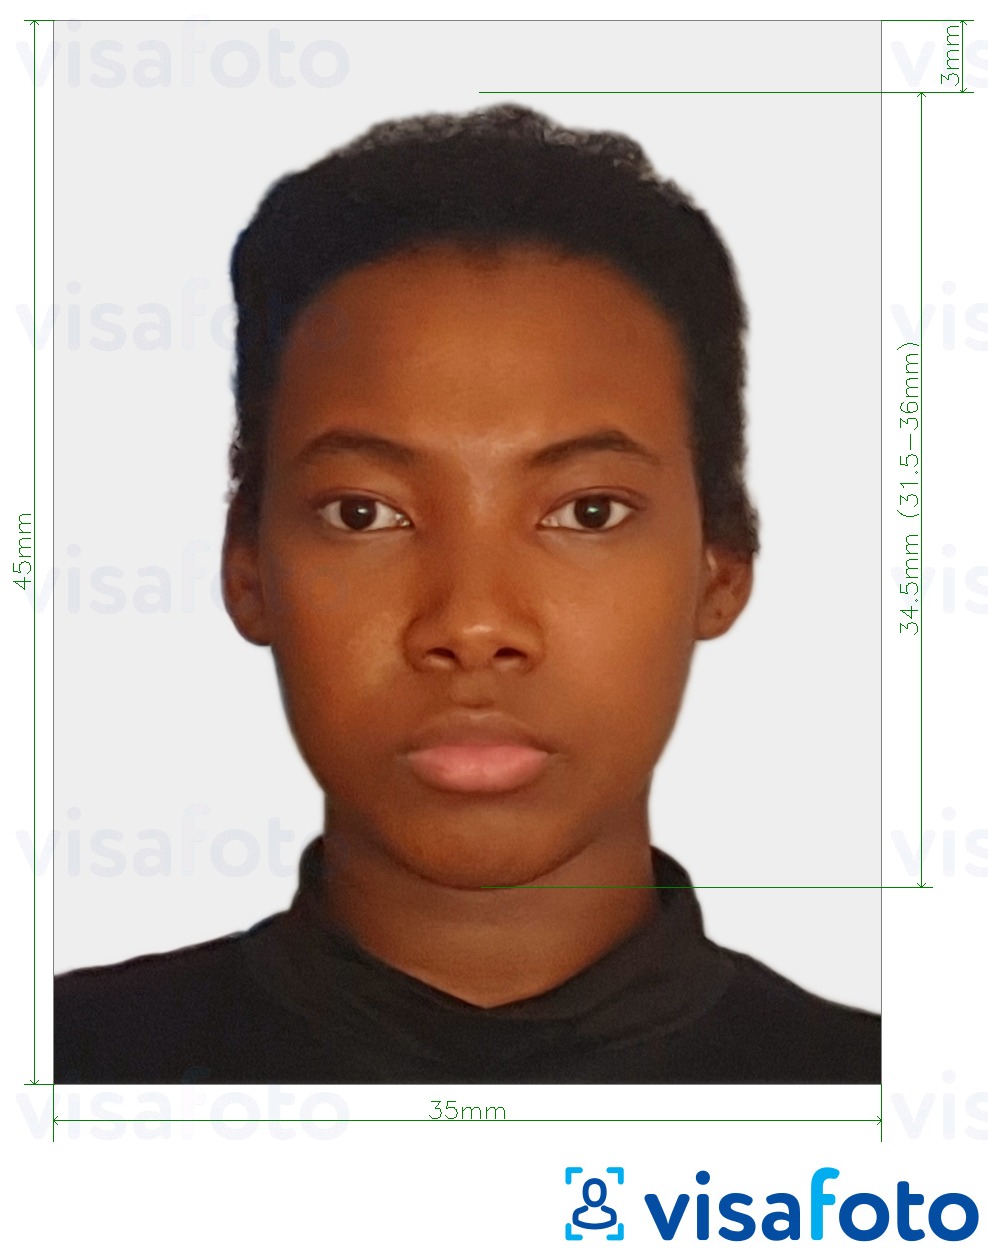 Contoh dari foto untuk Paspor Kongo (Brazzaville) 35x45 mm (3,5x4,5 cm) dengan ukuran spesifikasi yang tepat